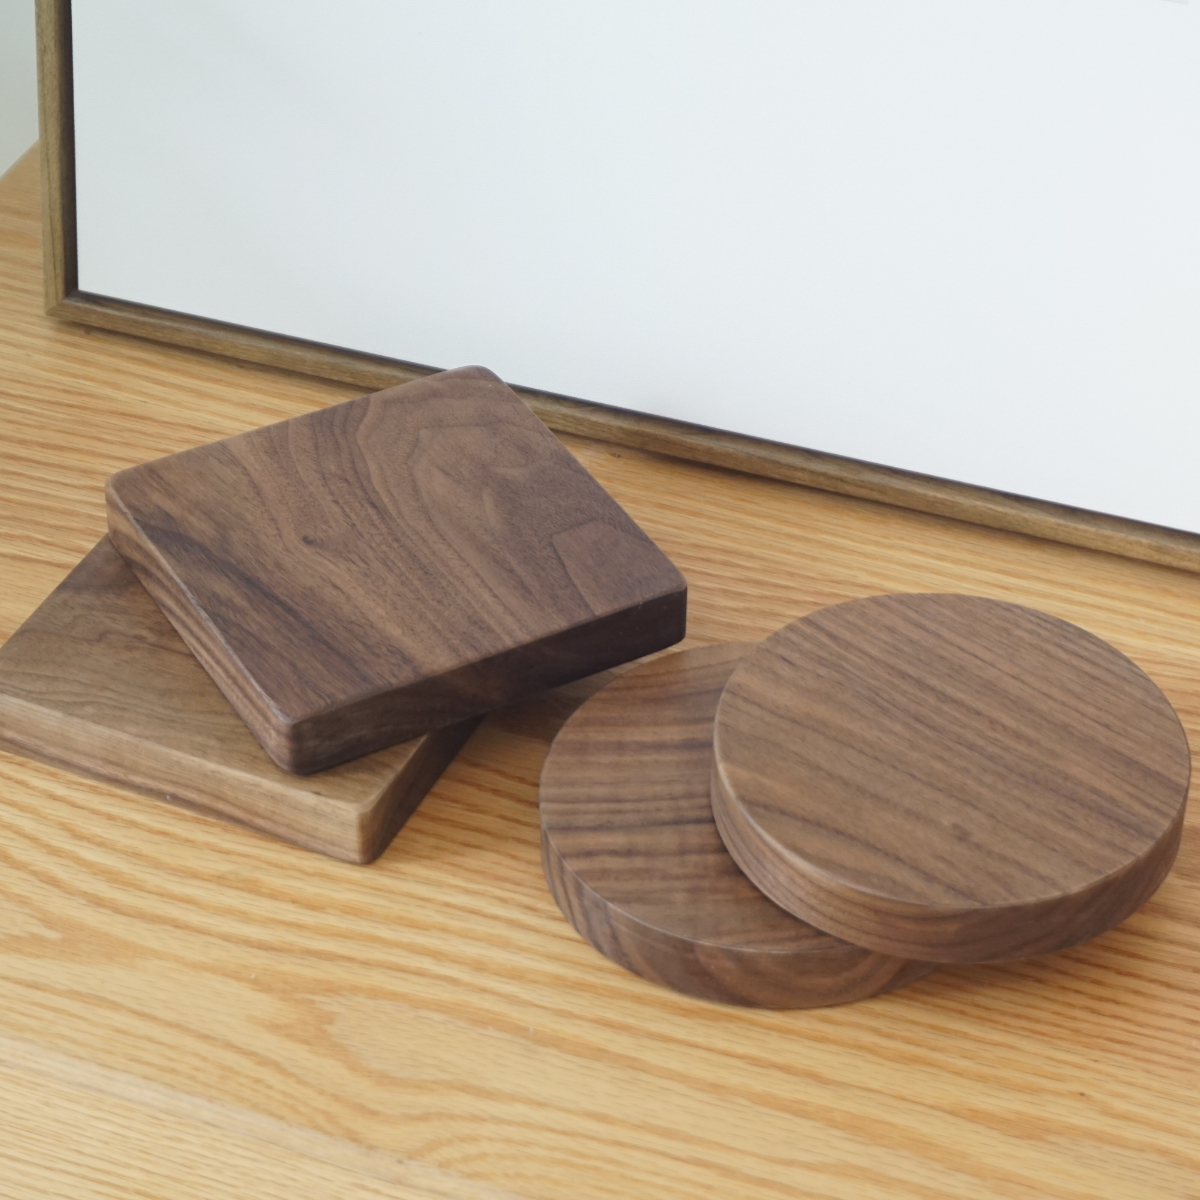 黑胡桃实木板圆形木块正方形实木板材模型摆件首饰展示底座杯垫